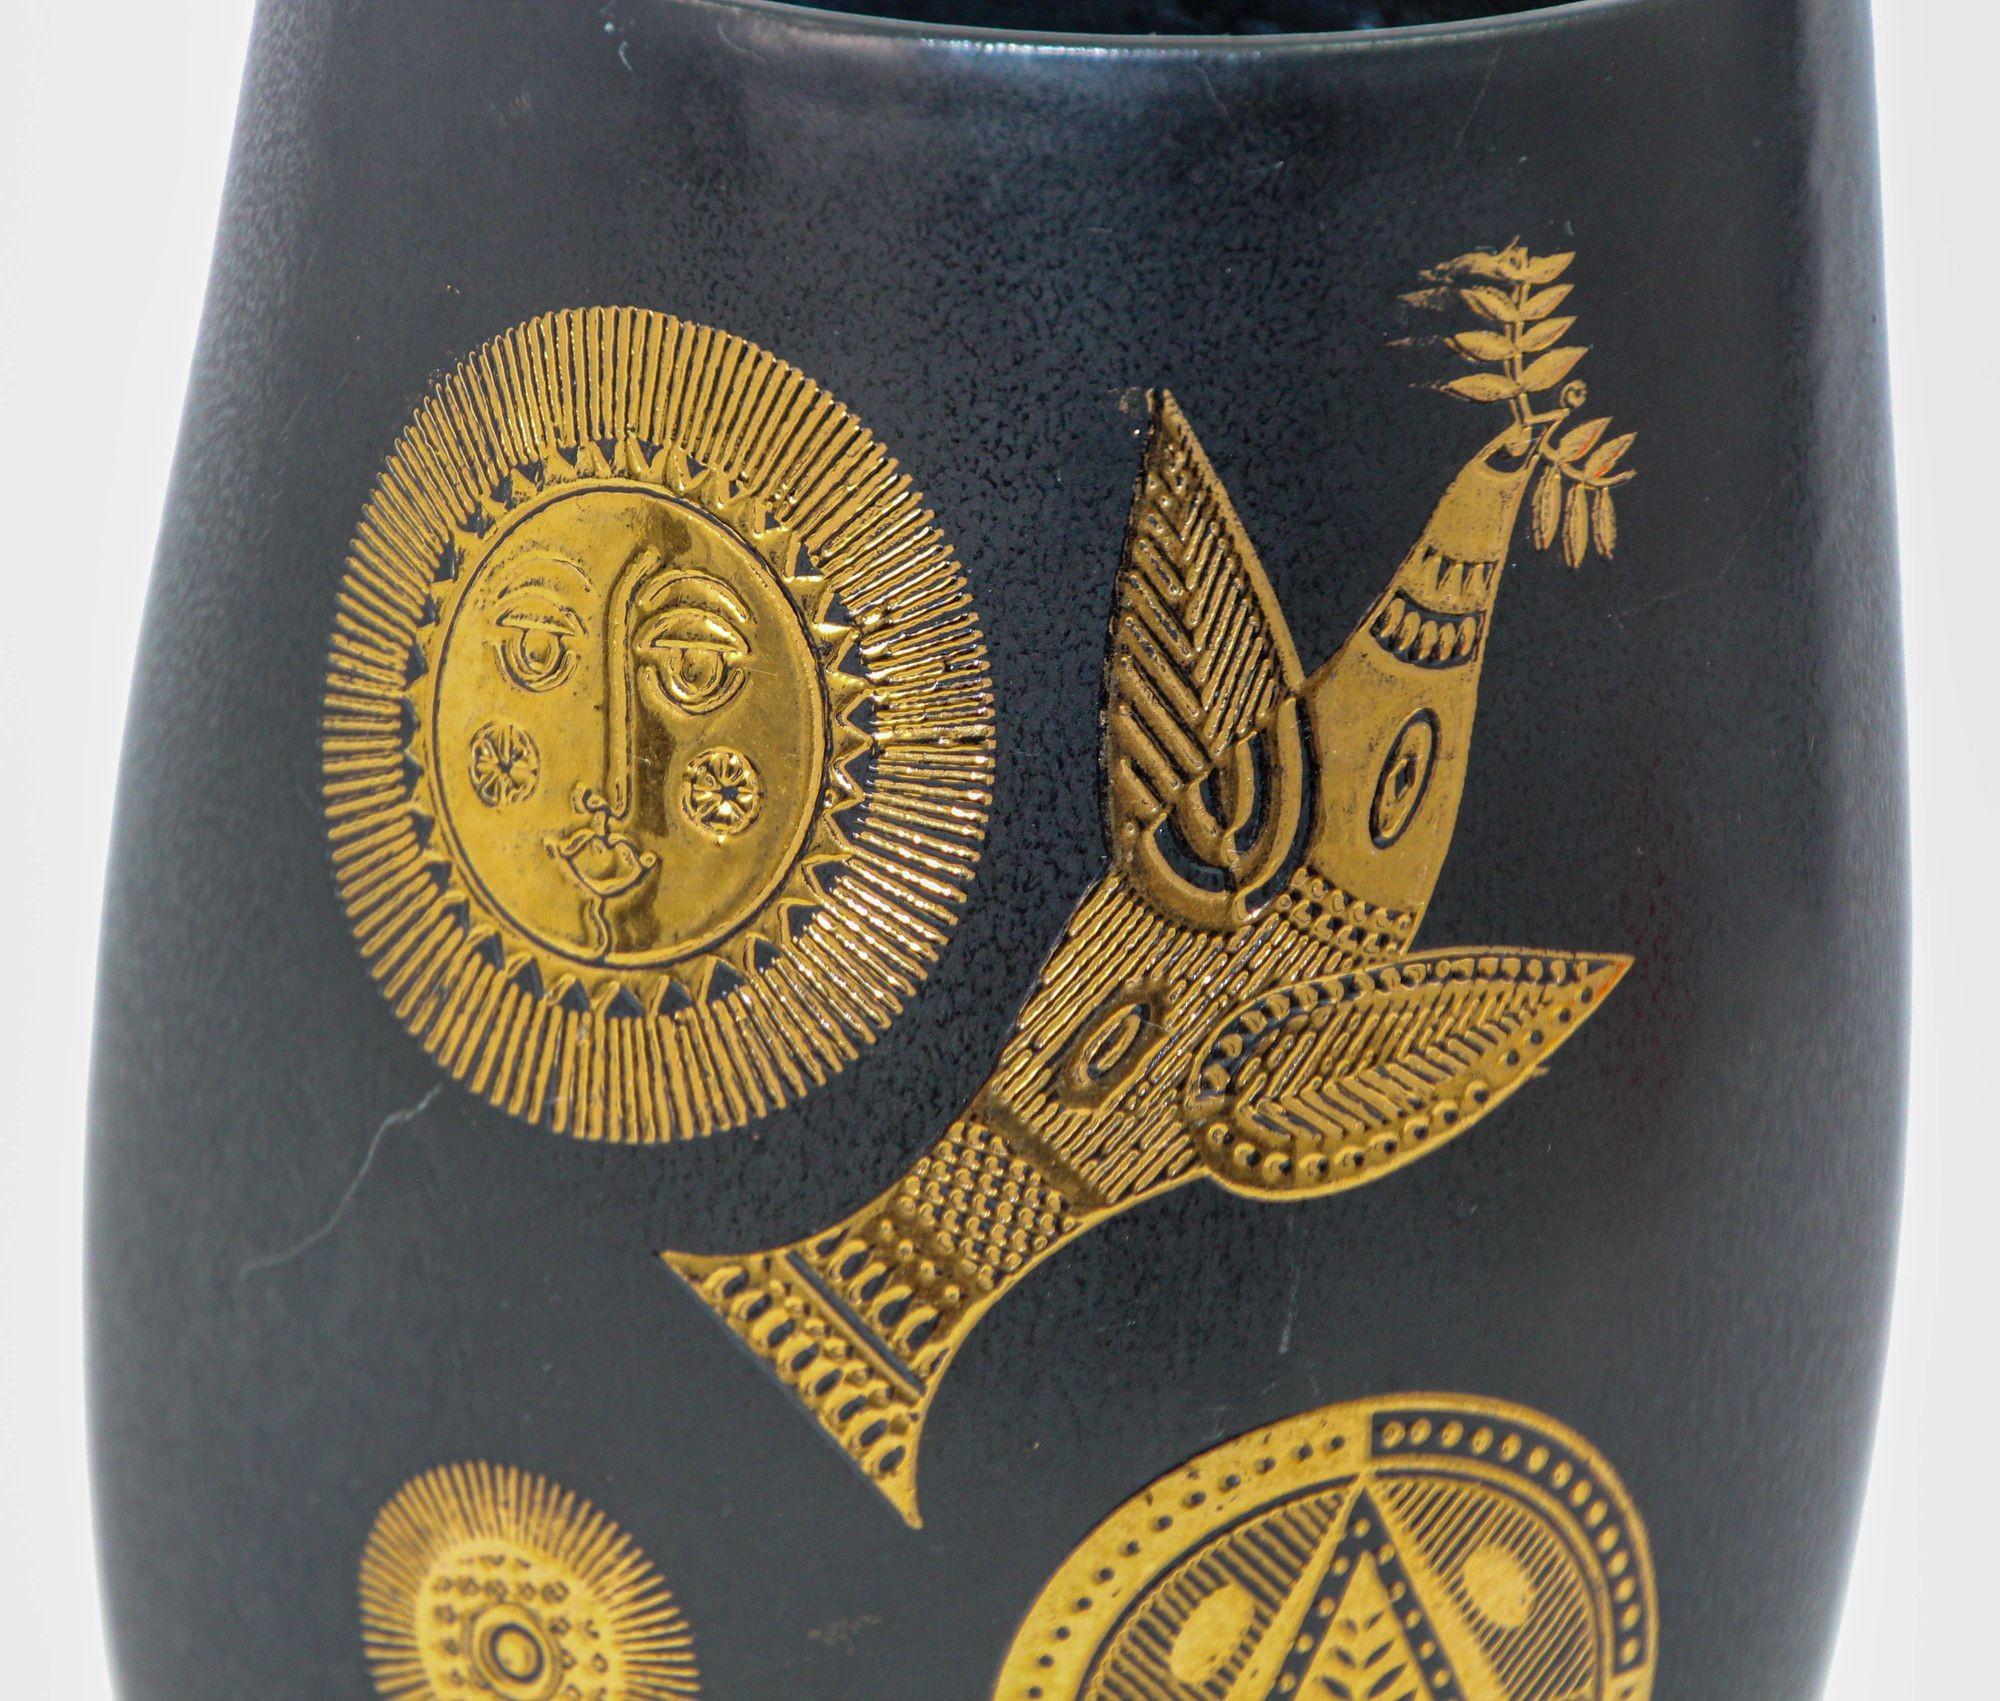 hyalyn vase